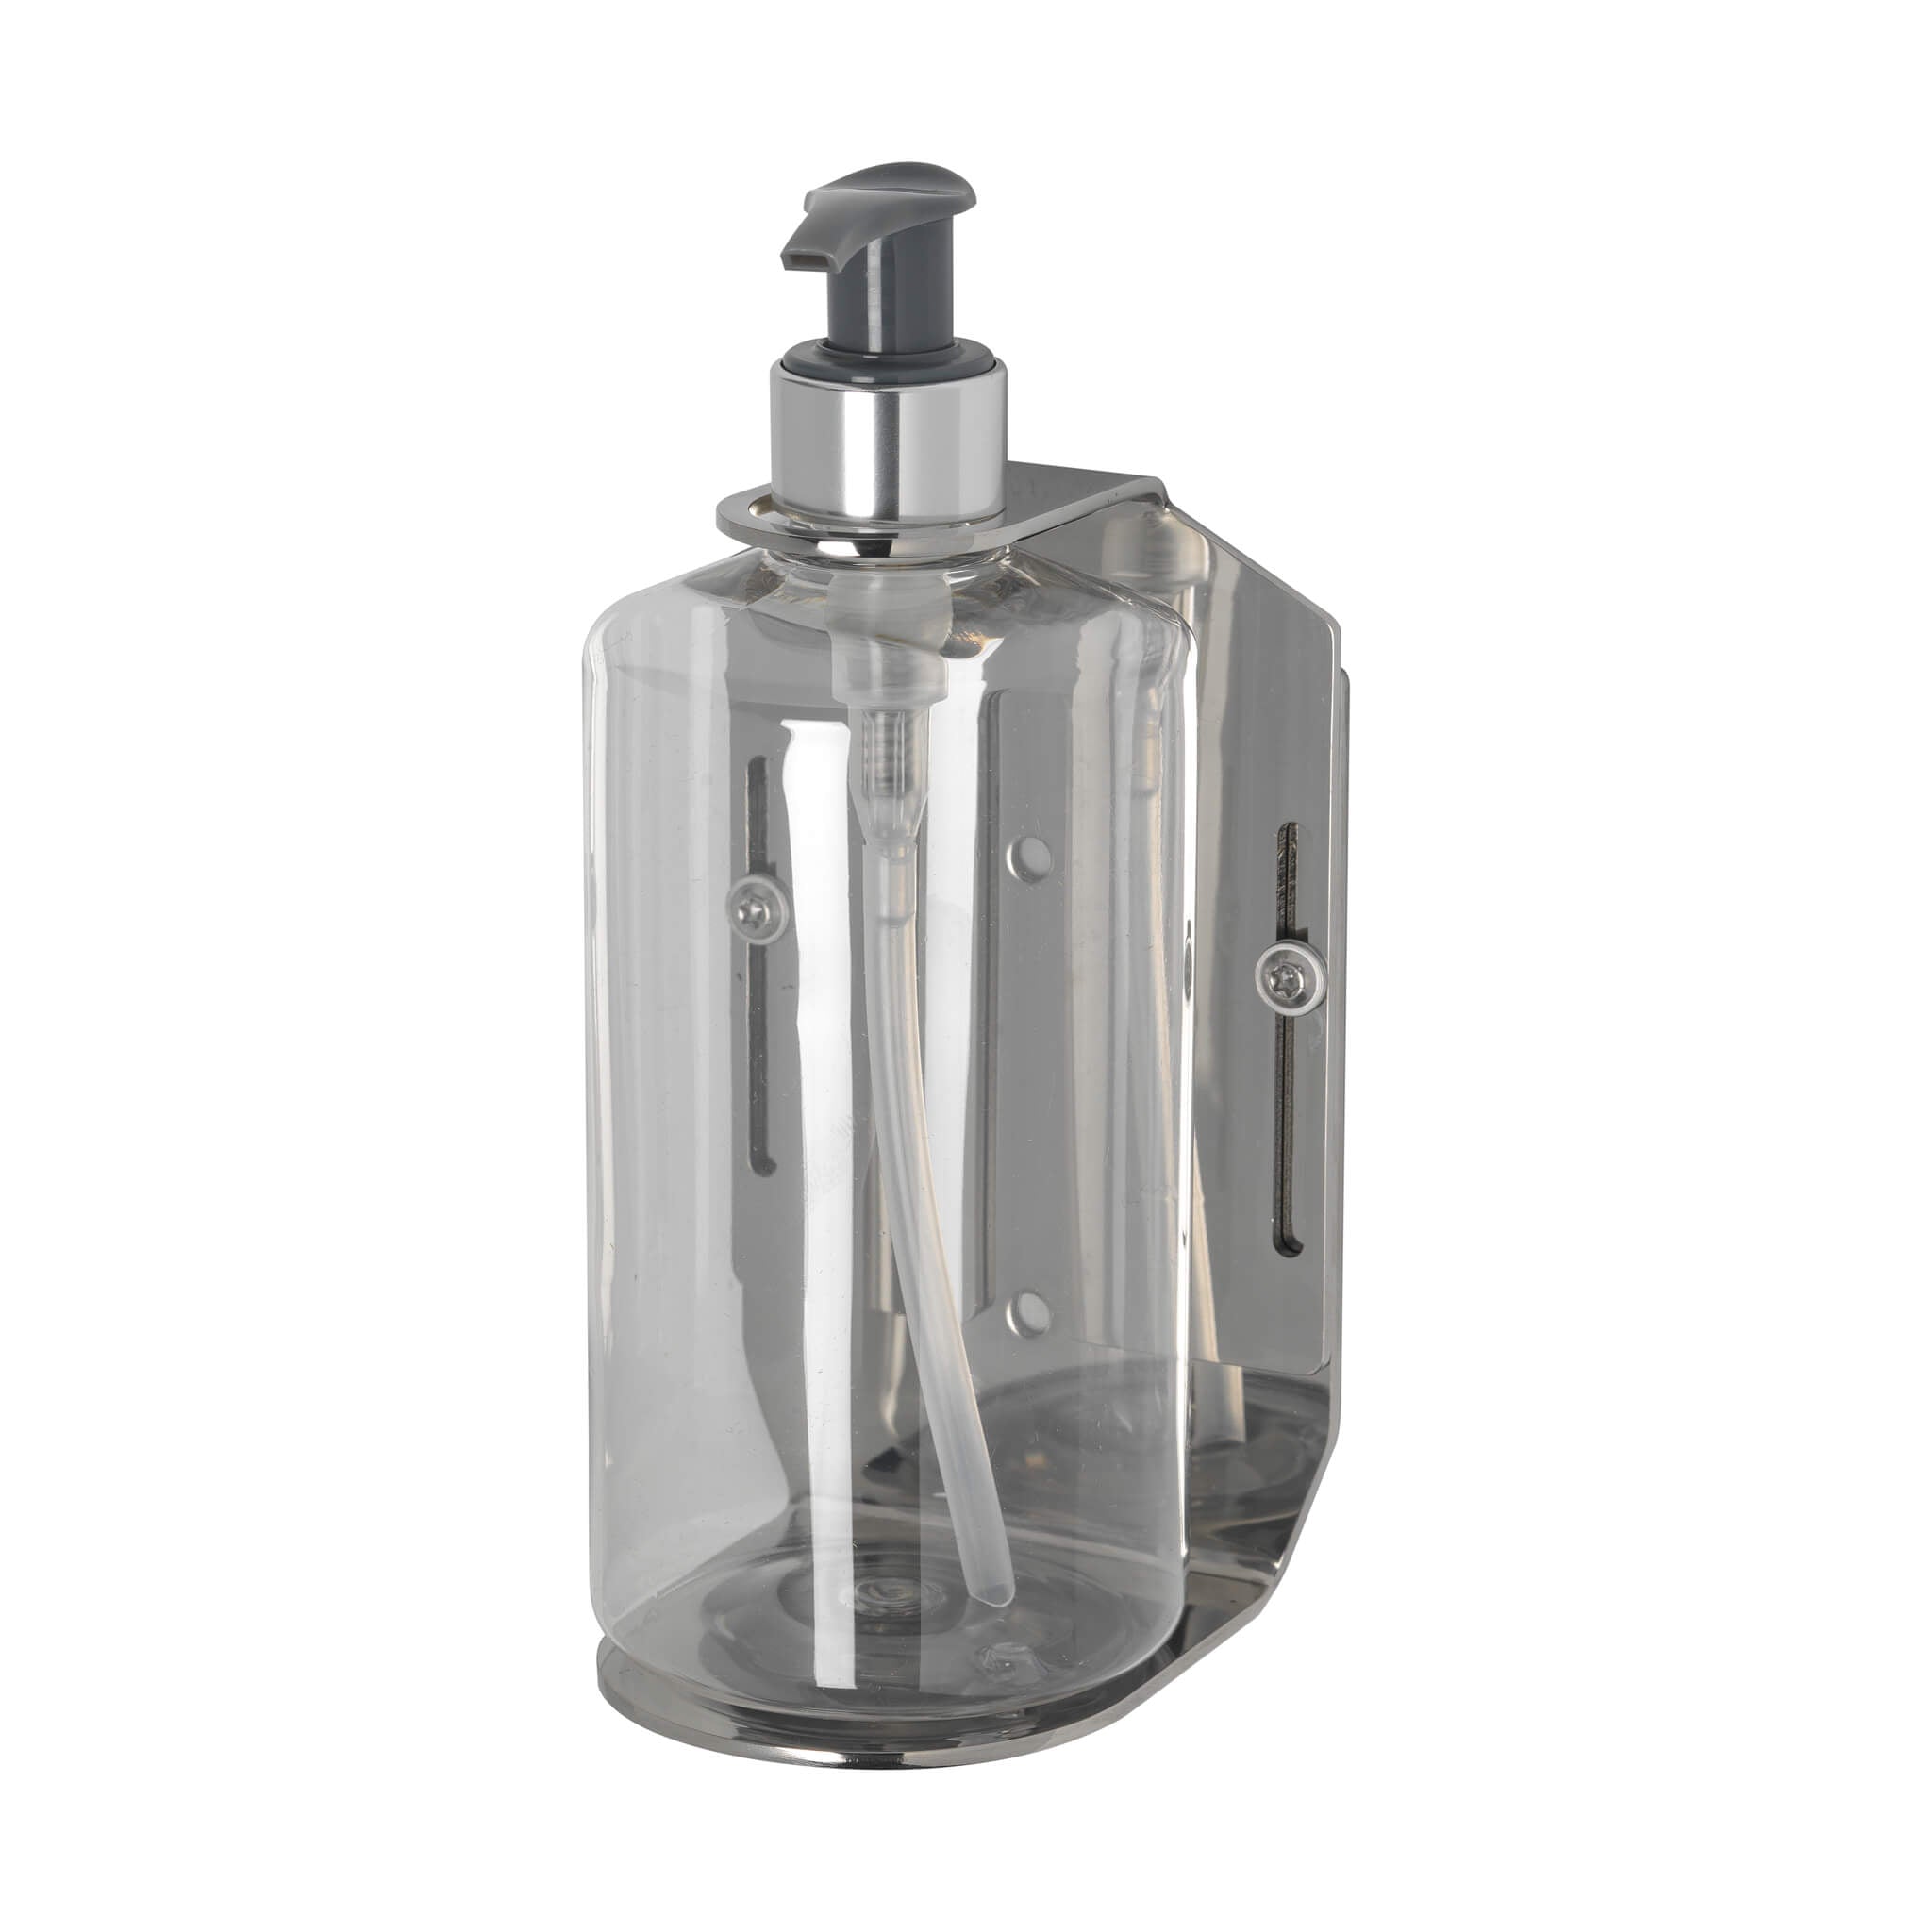 Dispenser, Handcrafted Industrial Whiskey Dispenser , Bottle Holder -   Denmark